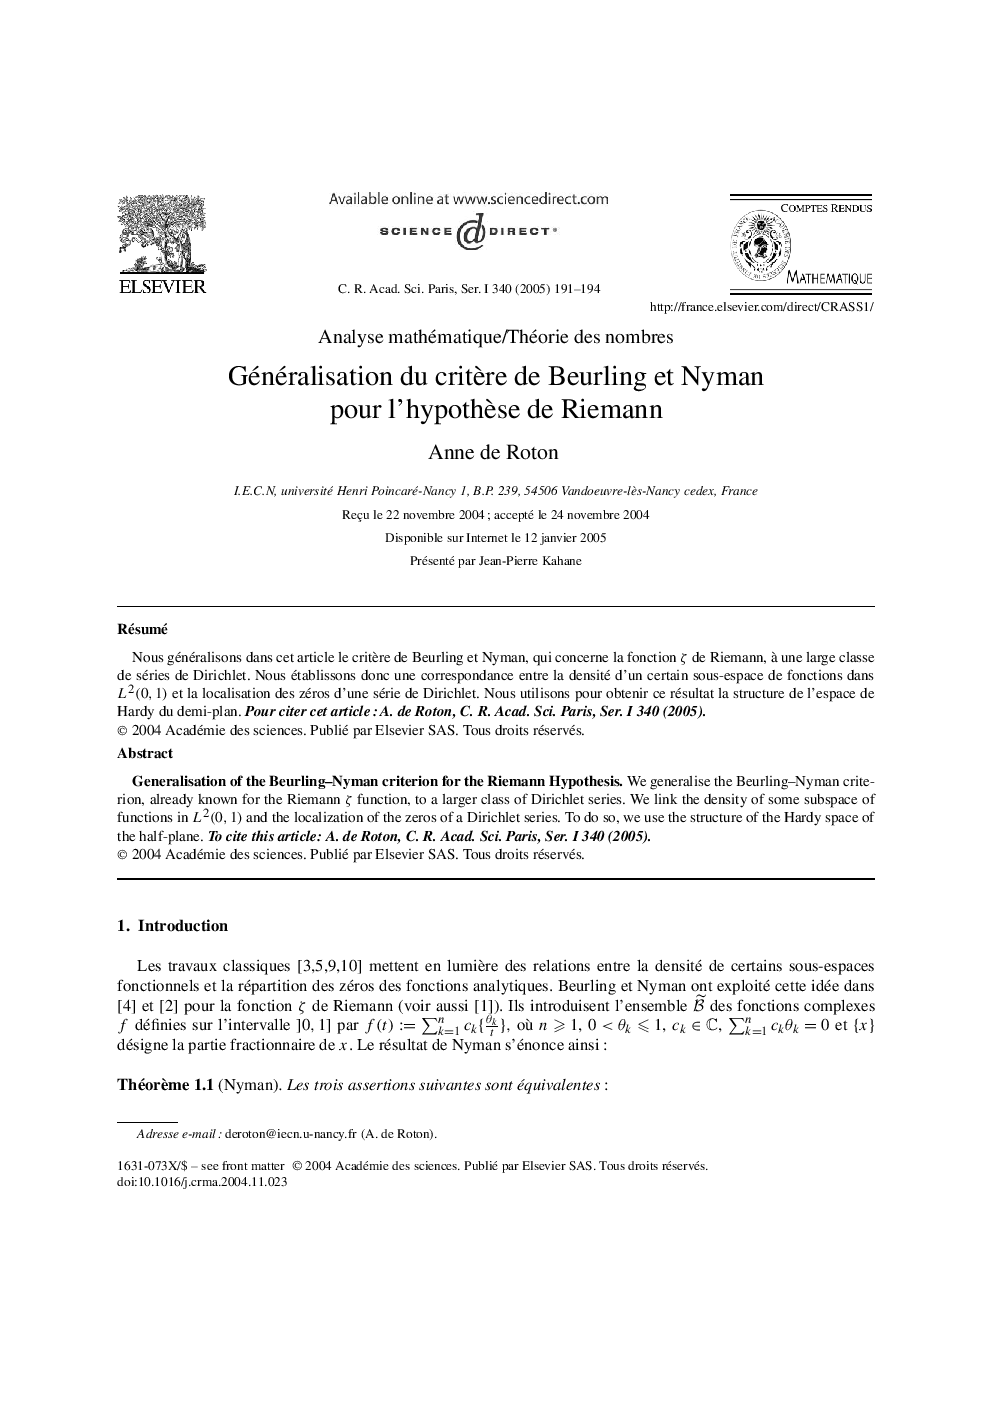 Généralisation du critÃ¨re de Beurling et Nyman pour l'hypothÃ¨se de Riemann